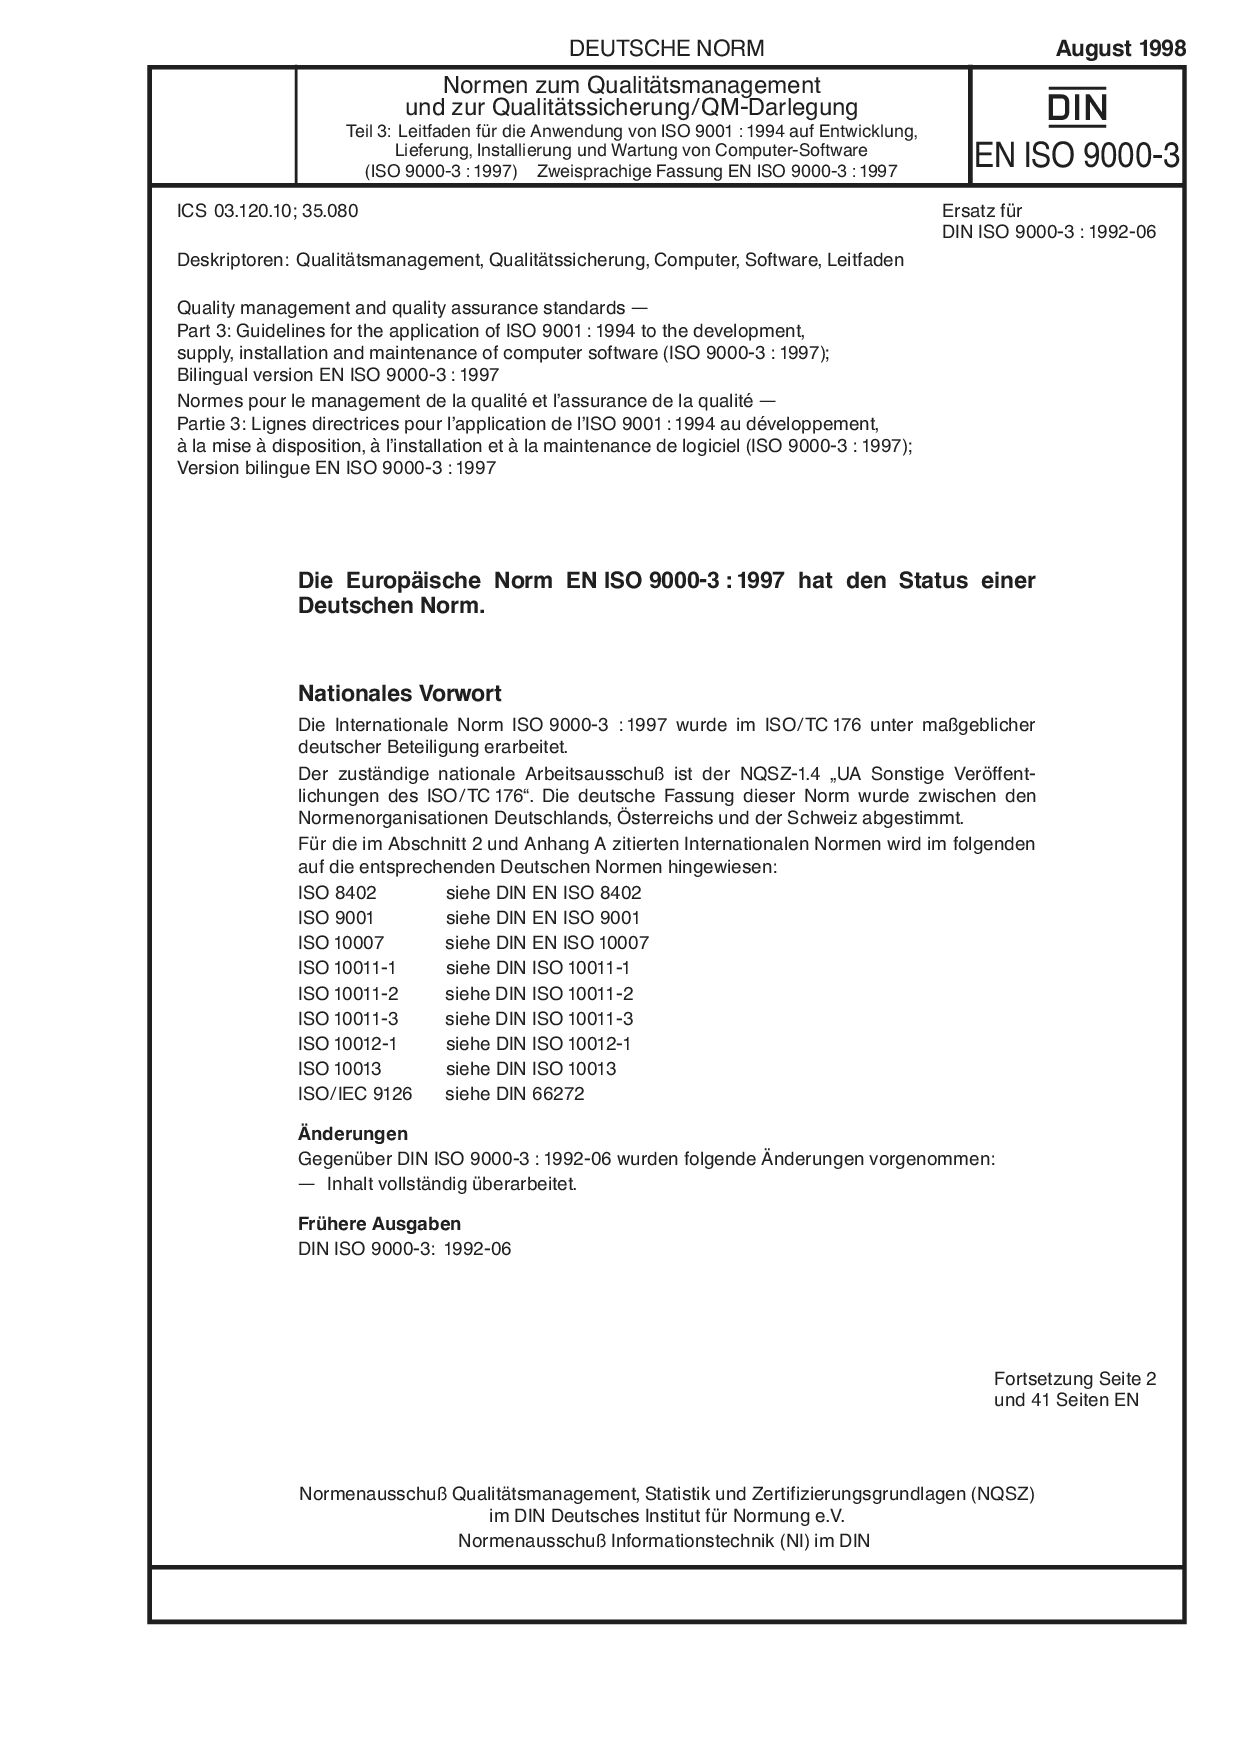 DIN EN ISO 9000-3:1998封面图